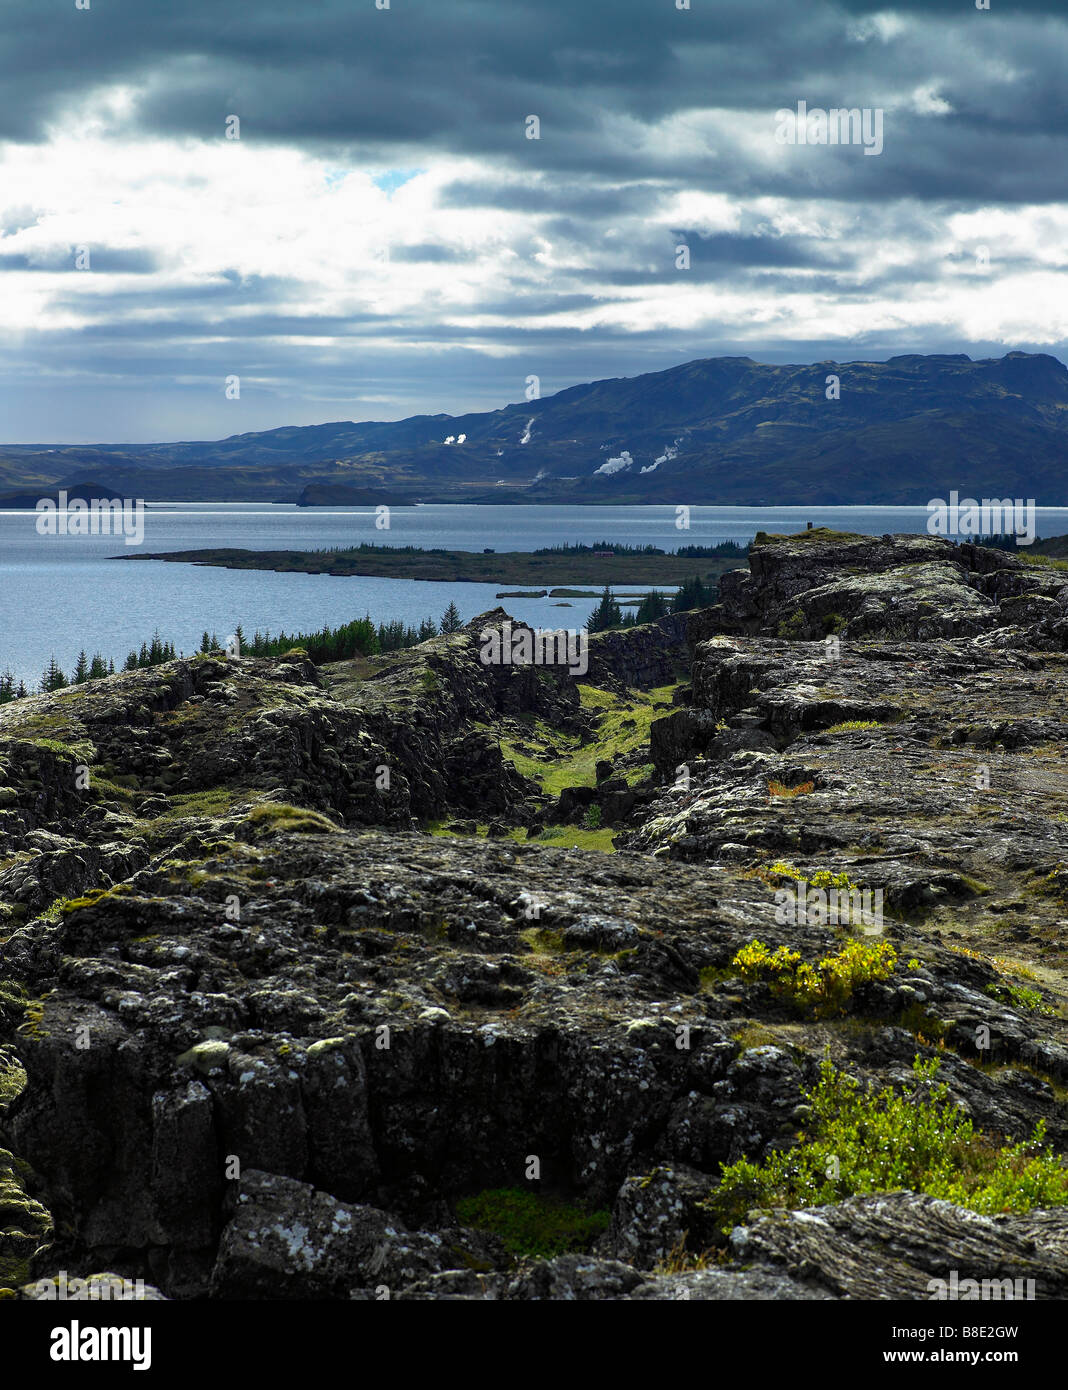 Lava landscape with earthquake cracks and Lake Thingvellir, Thingvellir National Park, Iceland Stock Photo